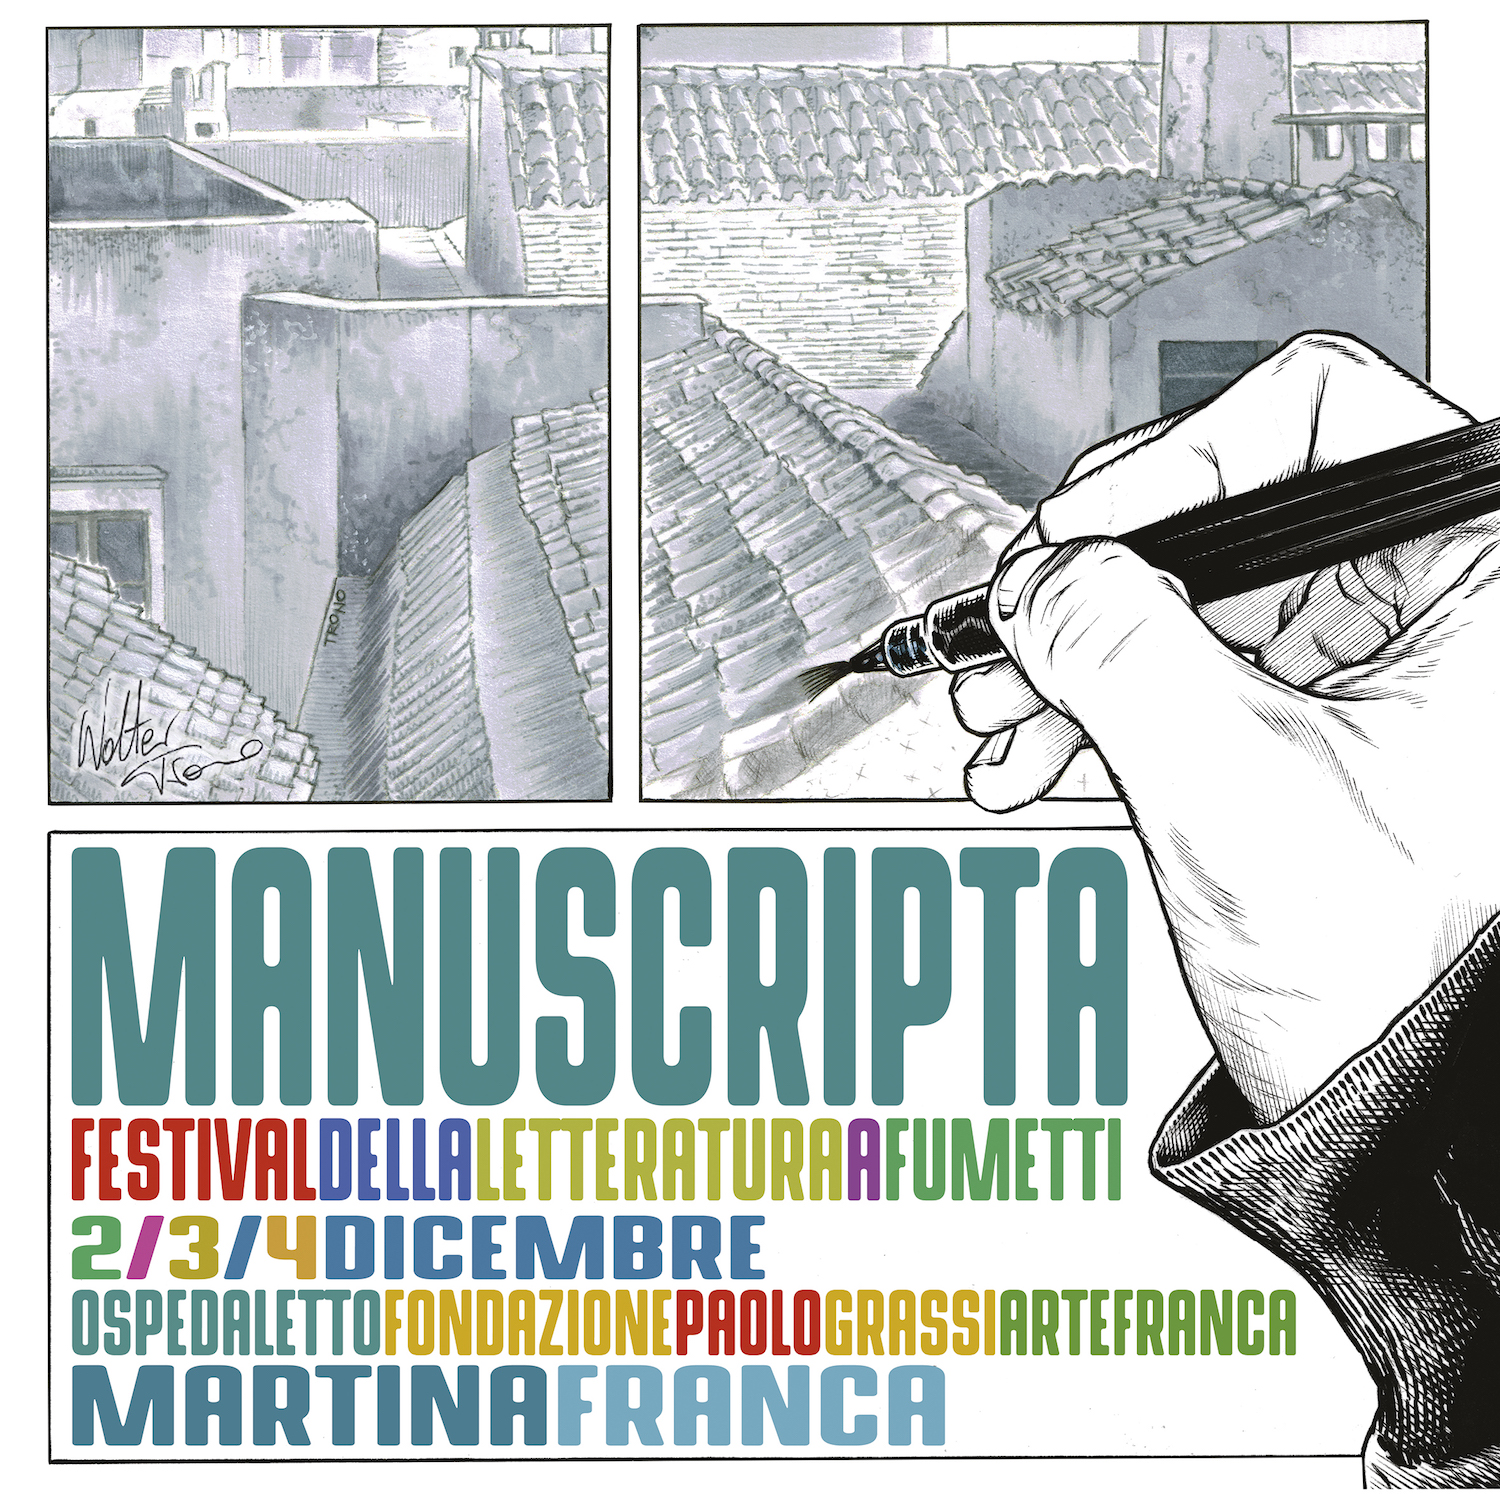 Manuscripta 2016: Festival della letteratura a fumetti